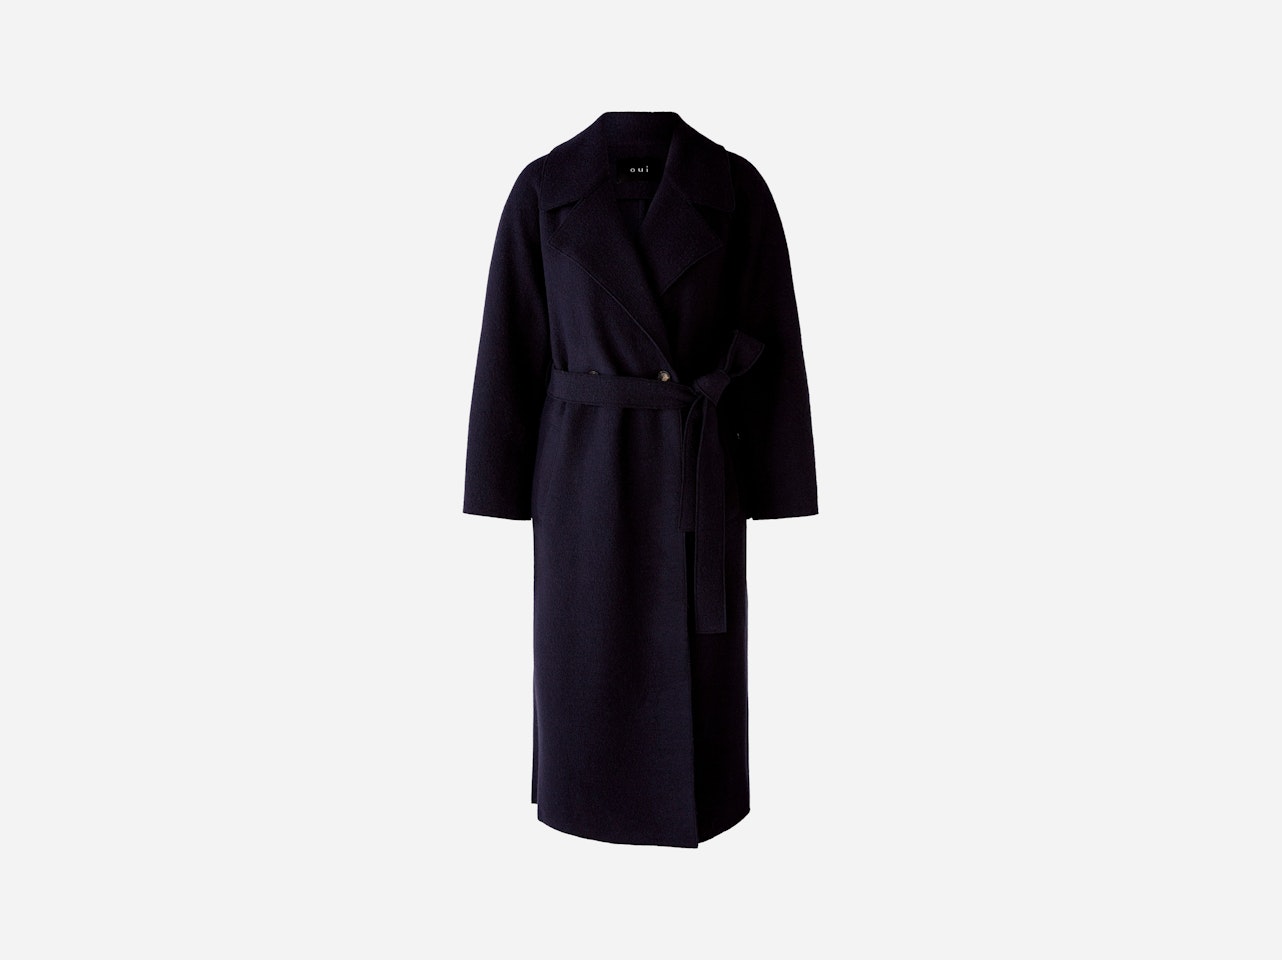 Bild 7 von Doppelreiher Mantel aus hochwertiger, italienischer Schurwolle in darkblue | Oui